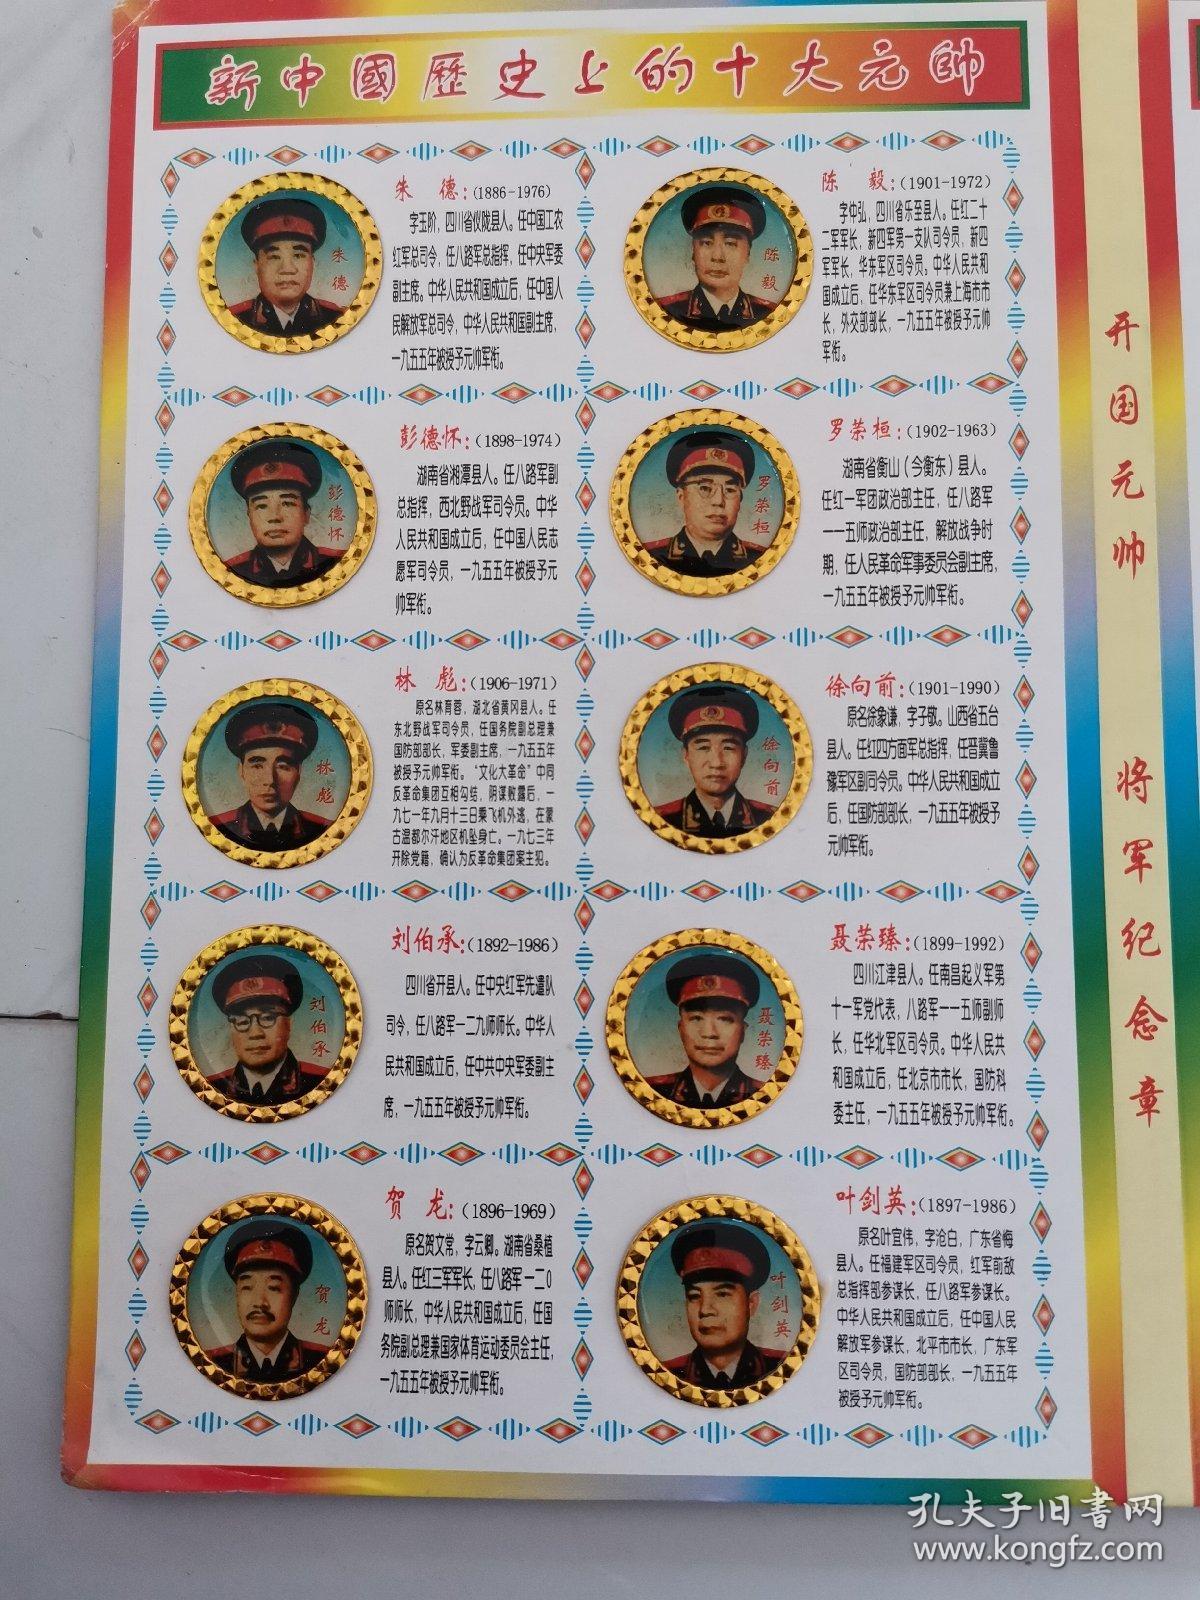 新中国历史上的十大元帅和十大将军